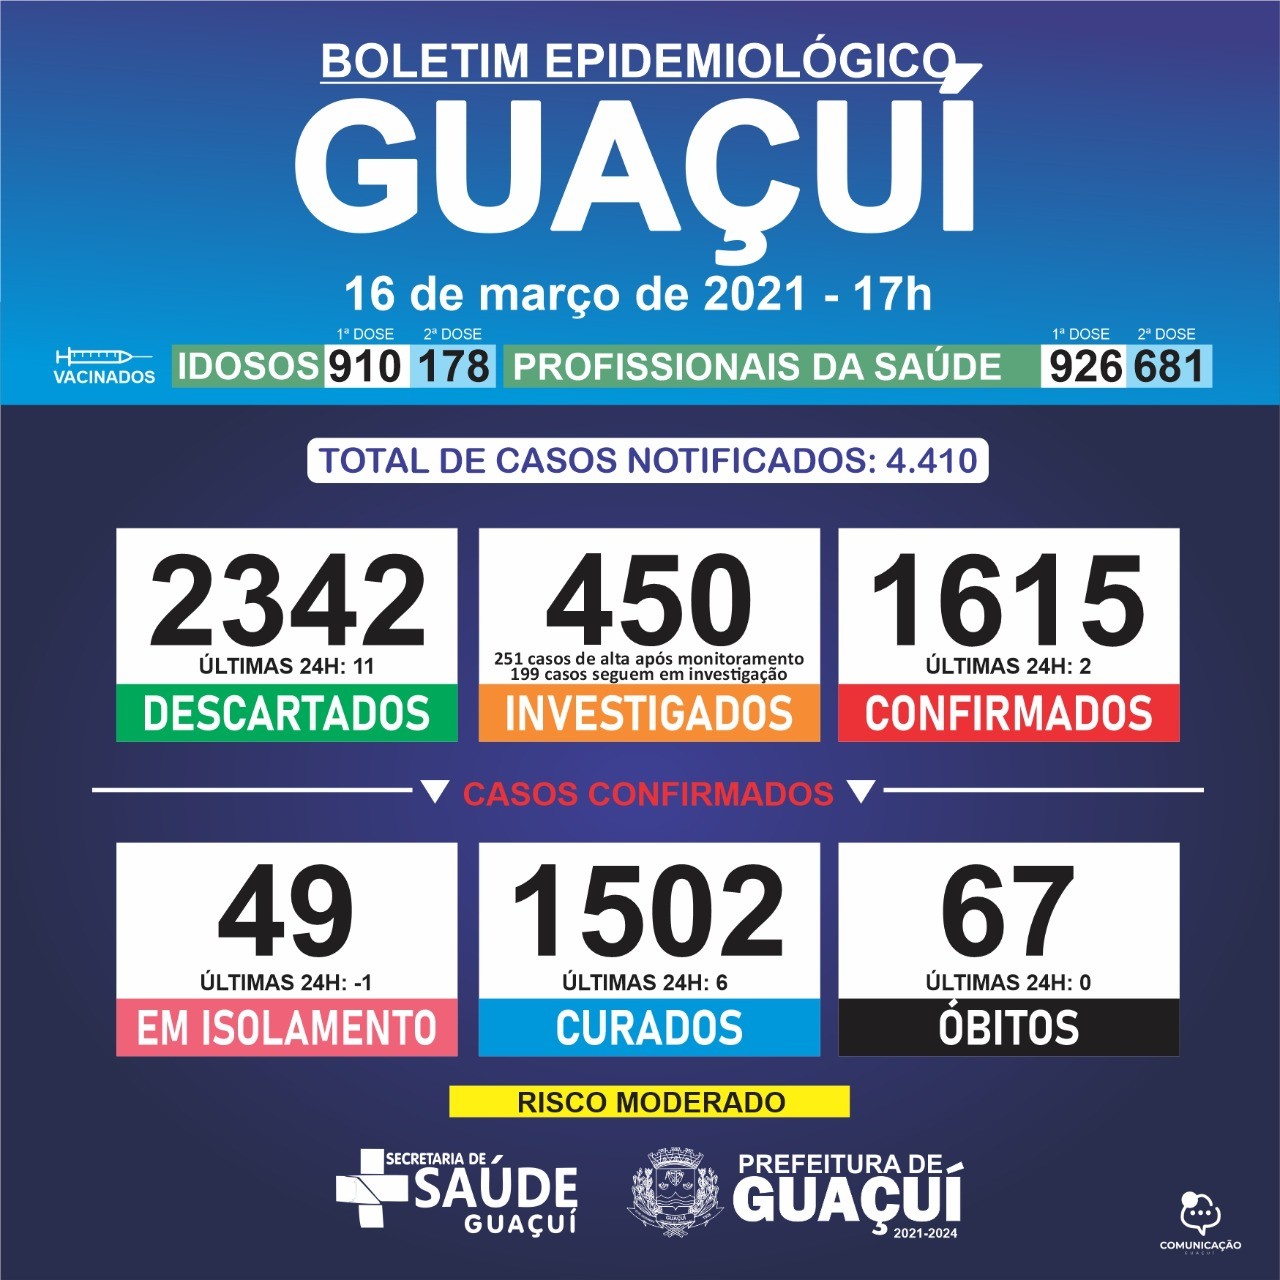 Boletim Epidemiológico 16/03/21: Guaçuí registra 6 curados e 2 casos confirmados de Covid-19 nas últimas 24 horas